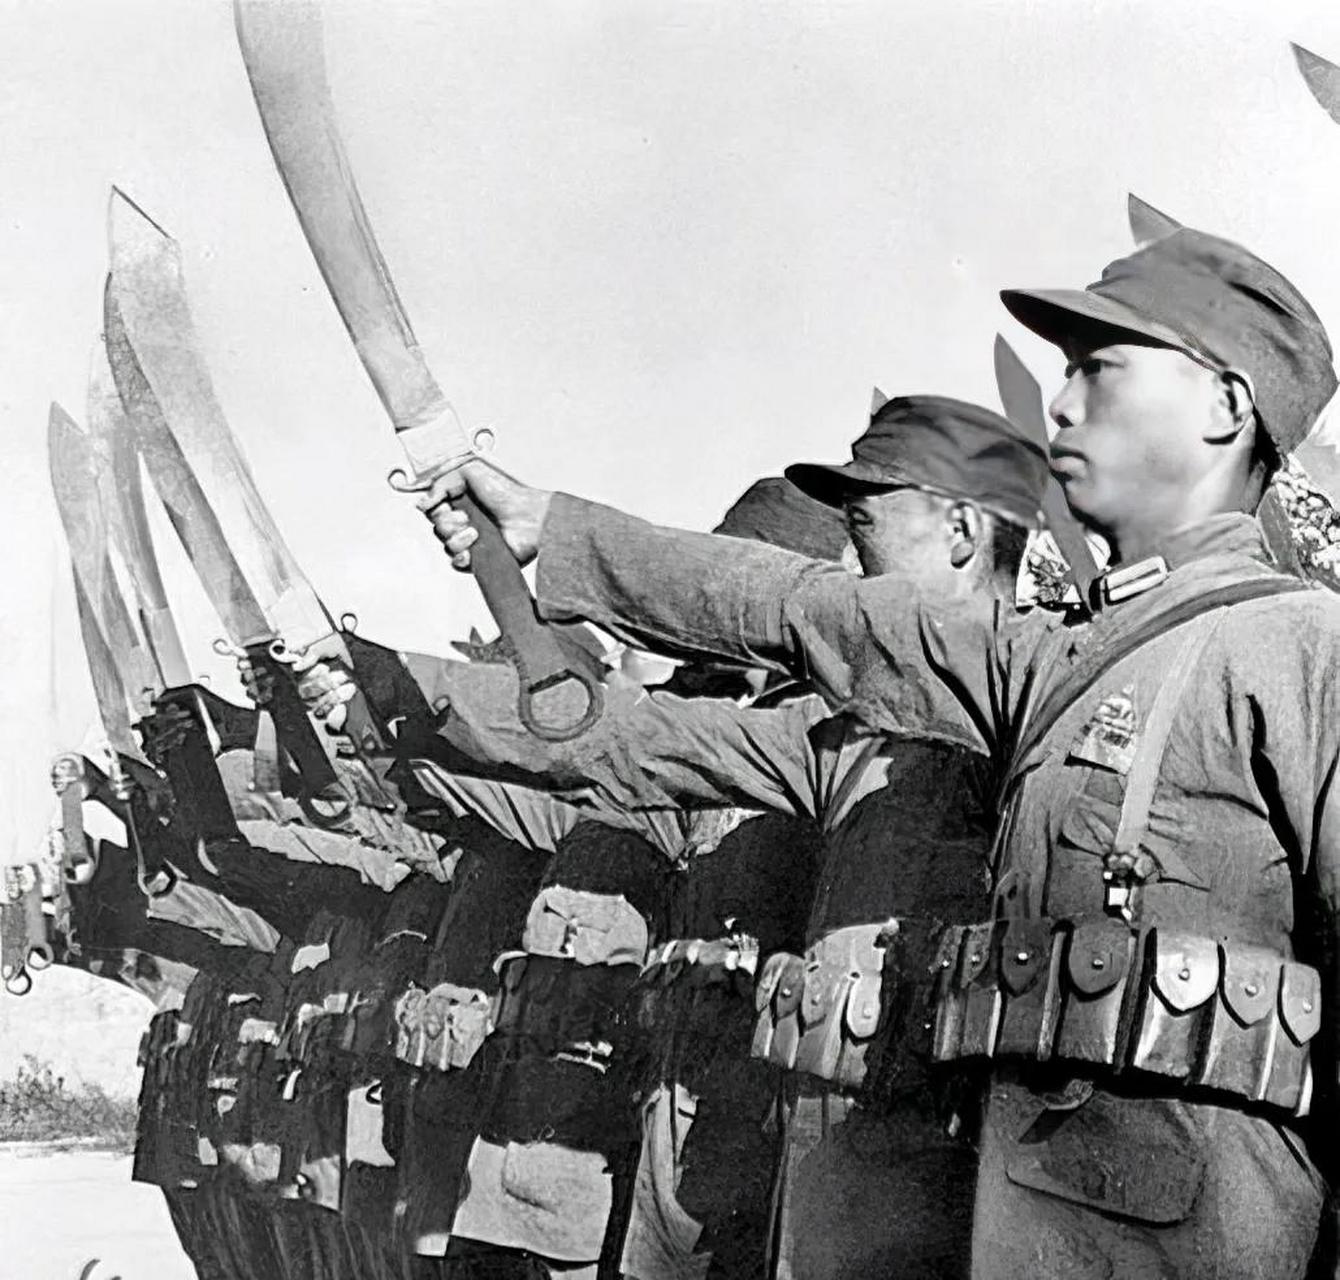 在1933年的喜峰口战役中,29军组建的大刀敢死队展现了惊人的勇气和